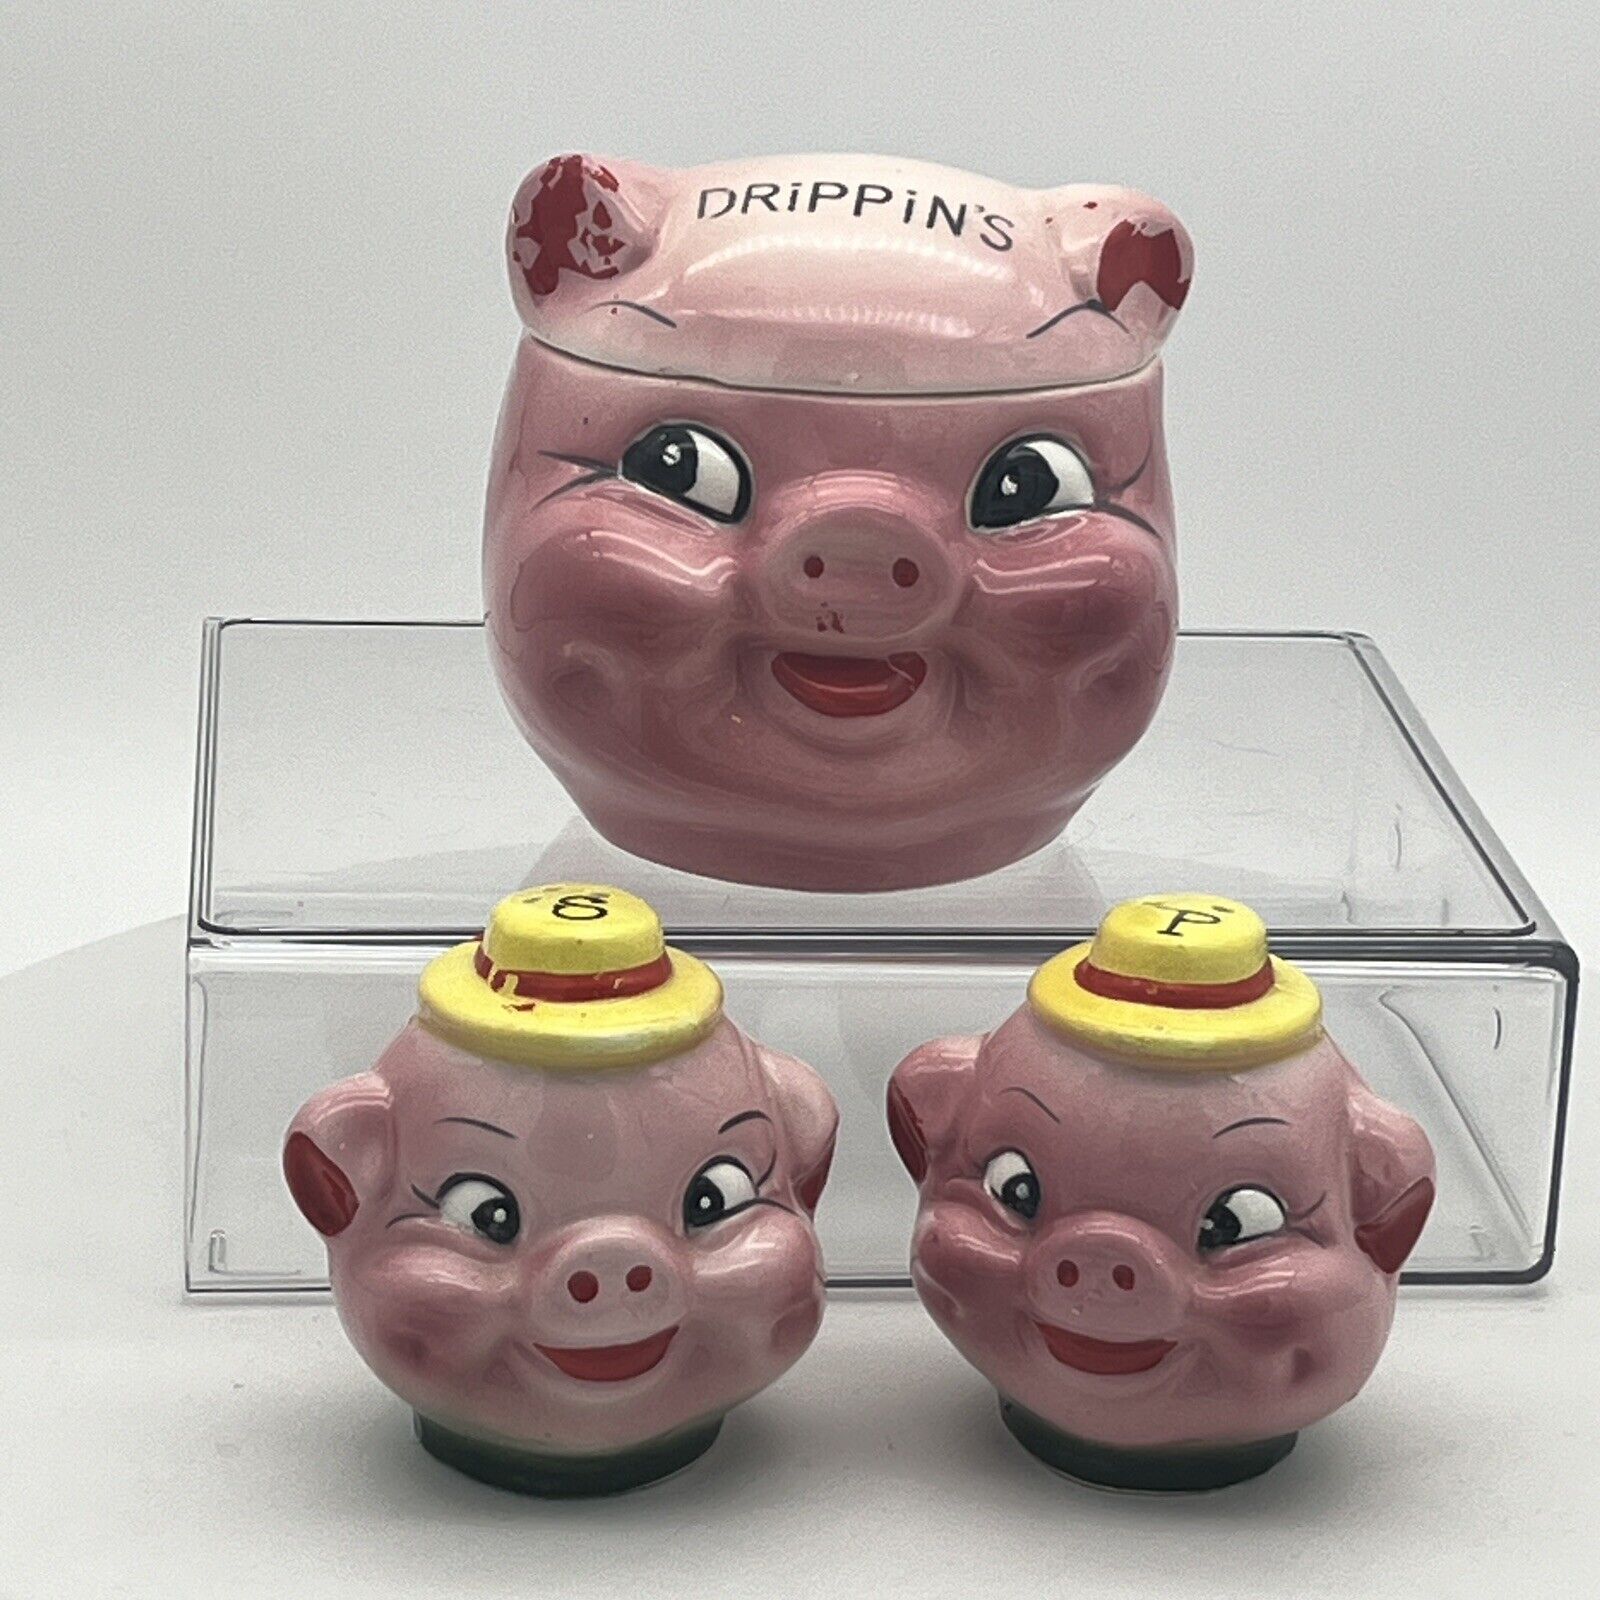 Vintage Little Pig Drippings Jar & Salt & Pepper Shakers